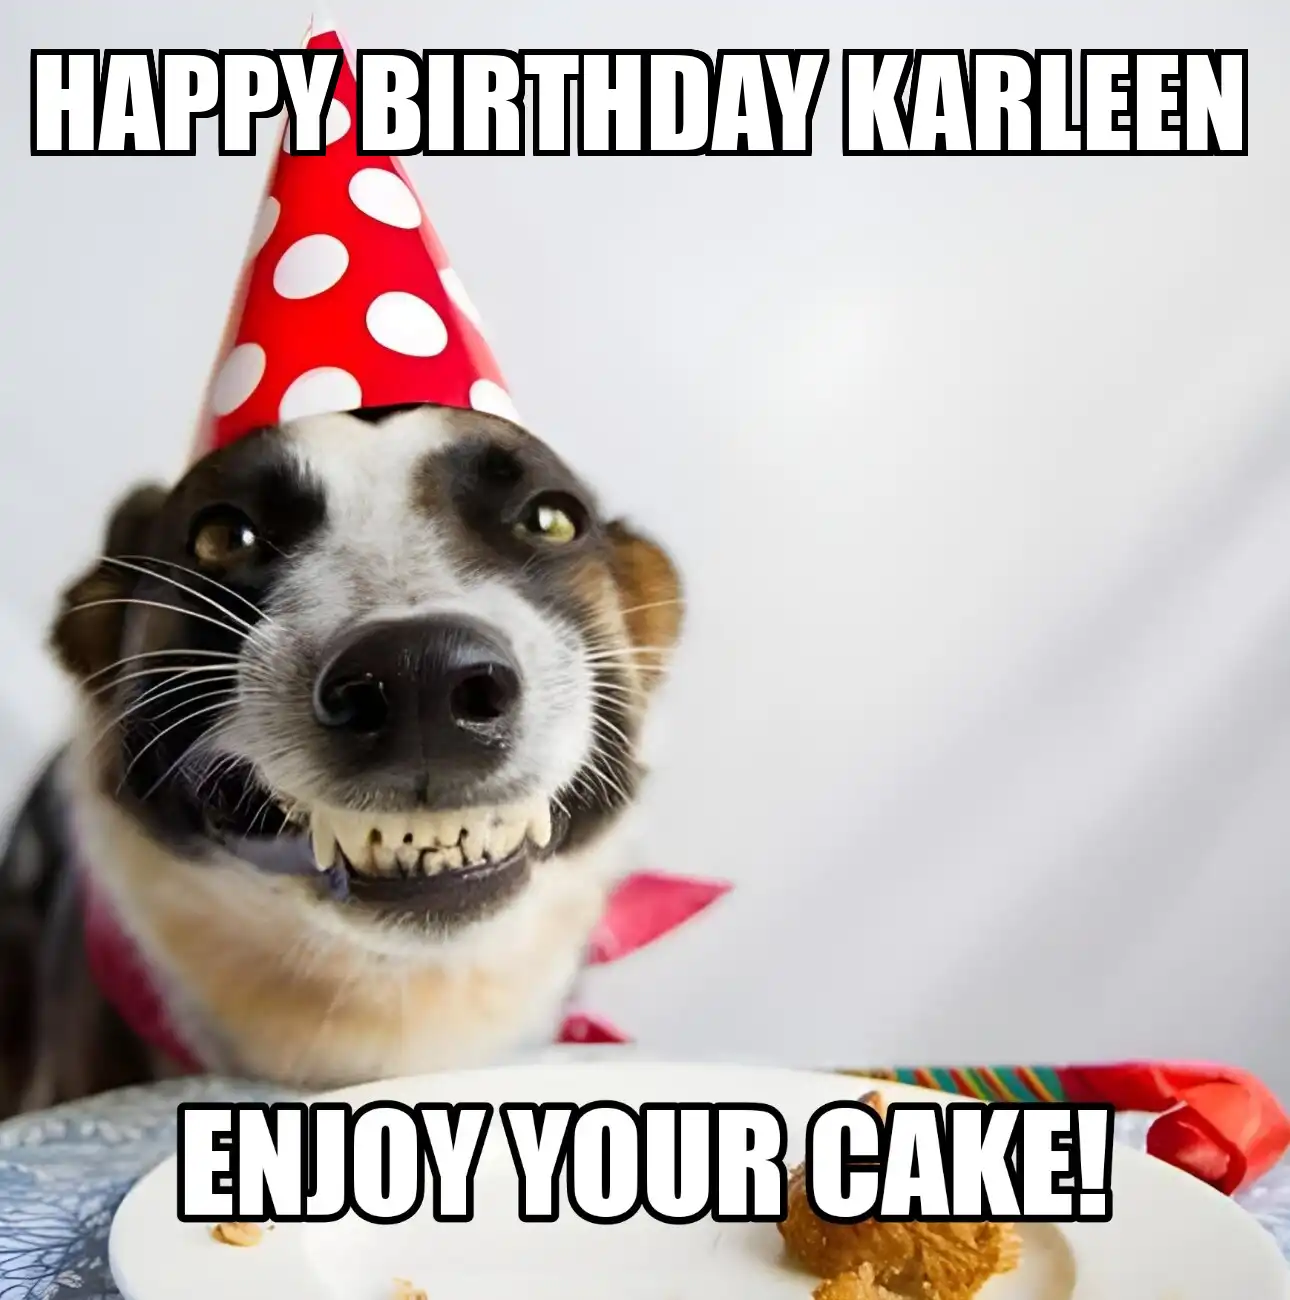 Happy Birthday Karleen Enjoy Your Cake Dog Meme